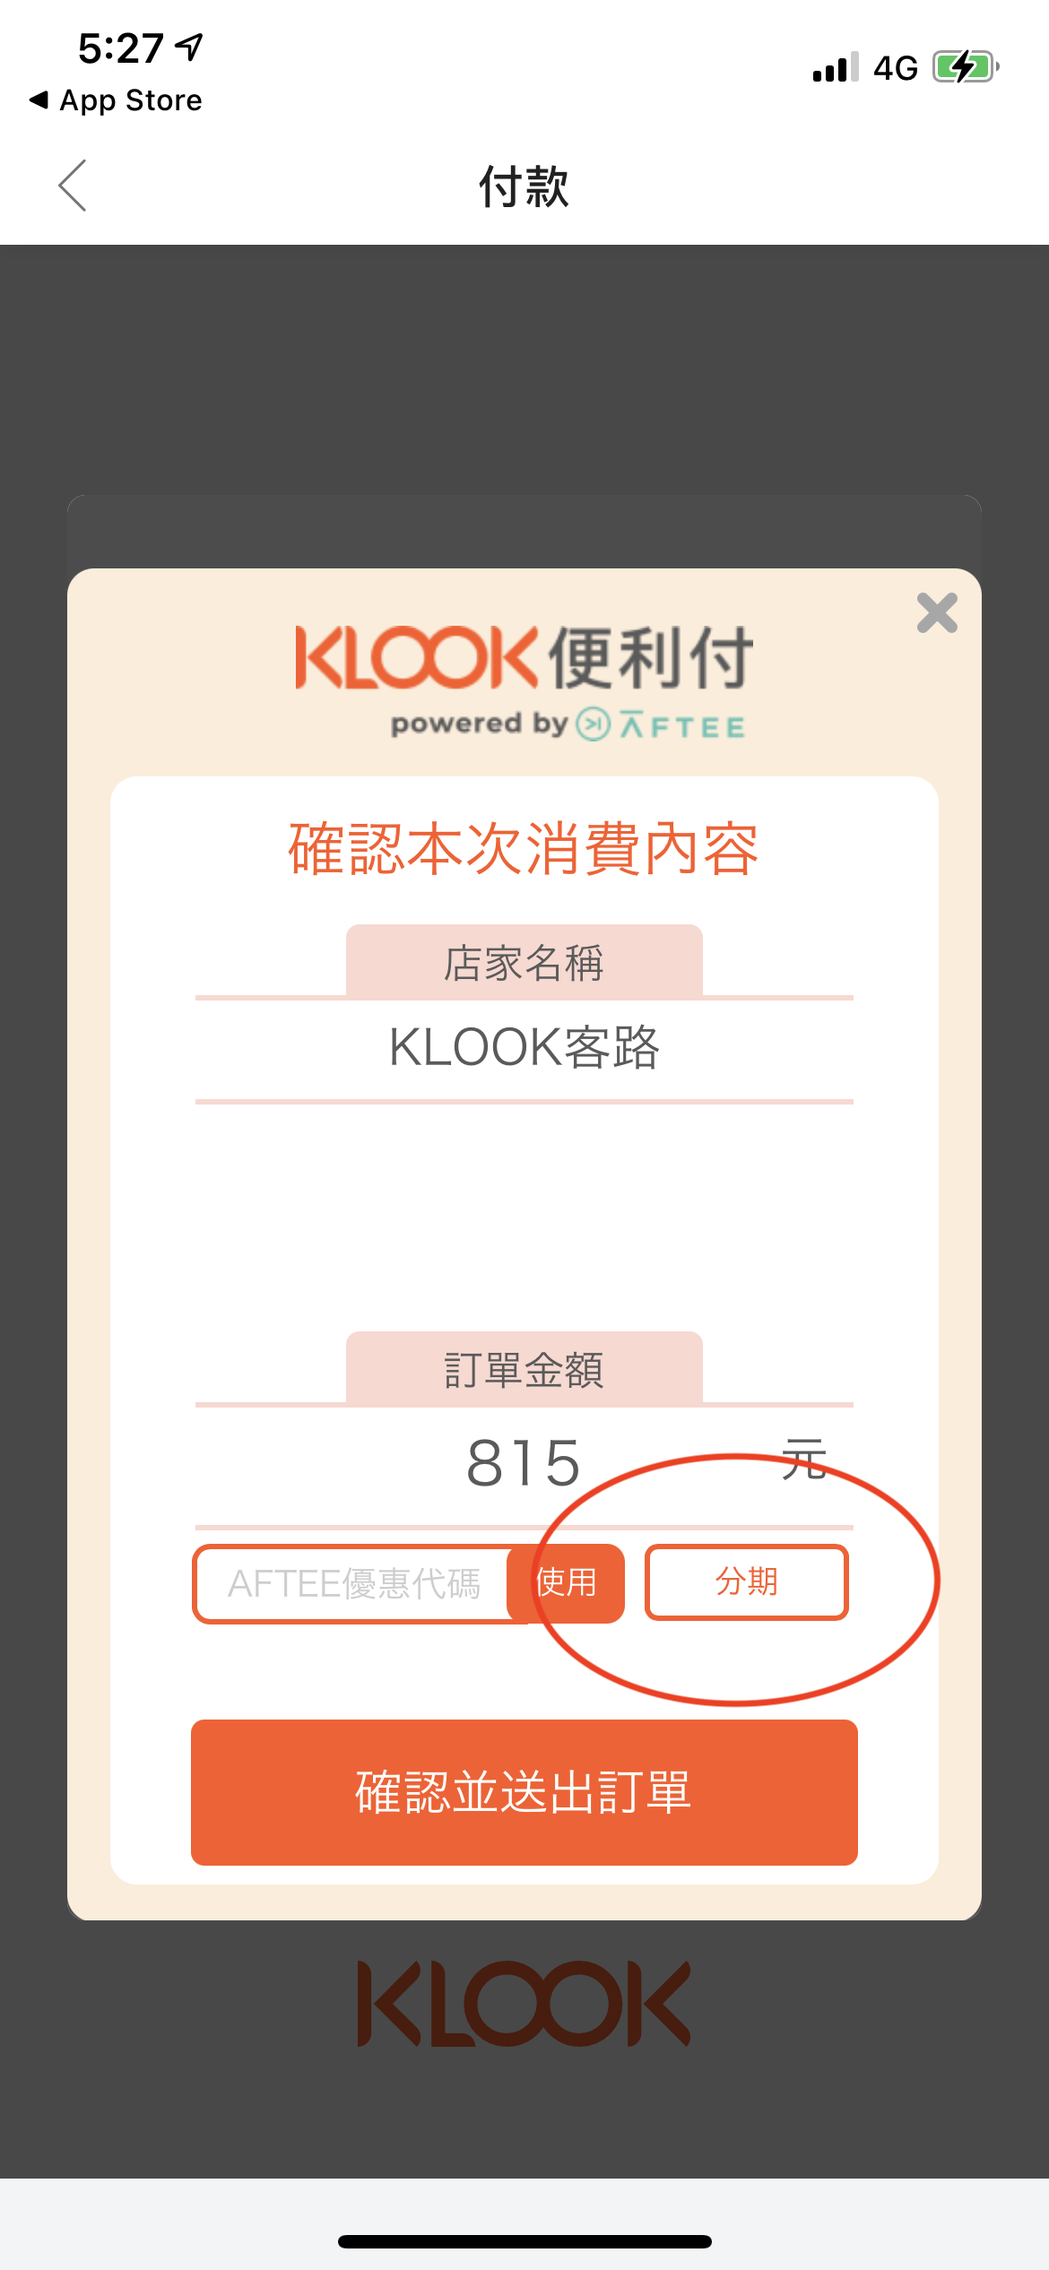 步驟四：「KLOOK 便利付」也支援無卡分期功能，消費者可在結帳時自由選擇將單筆...